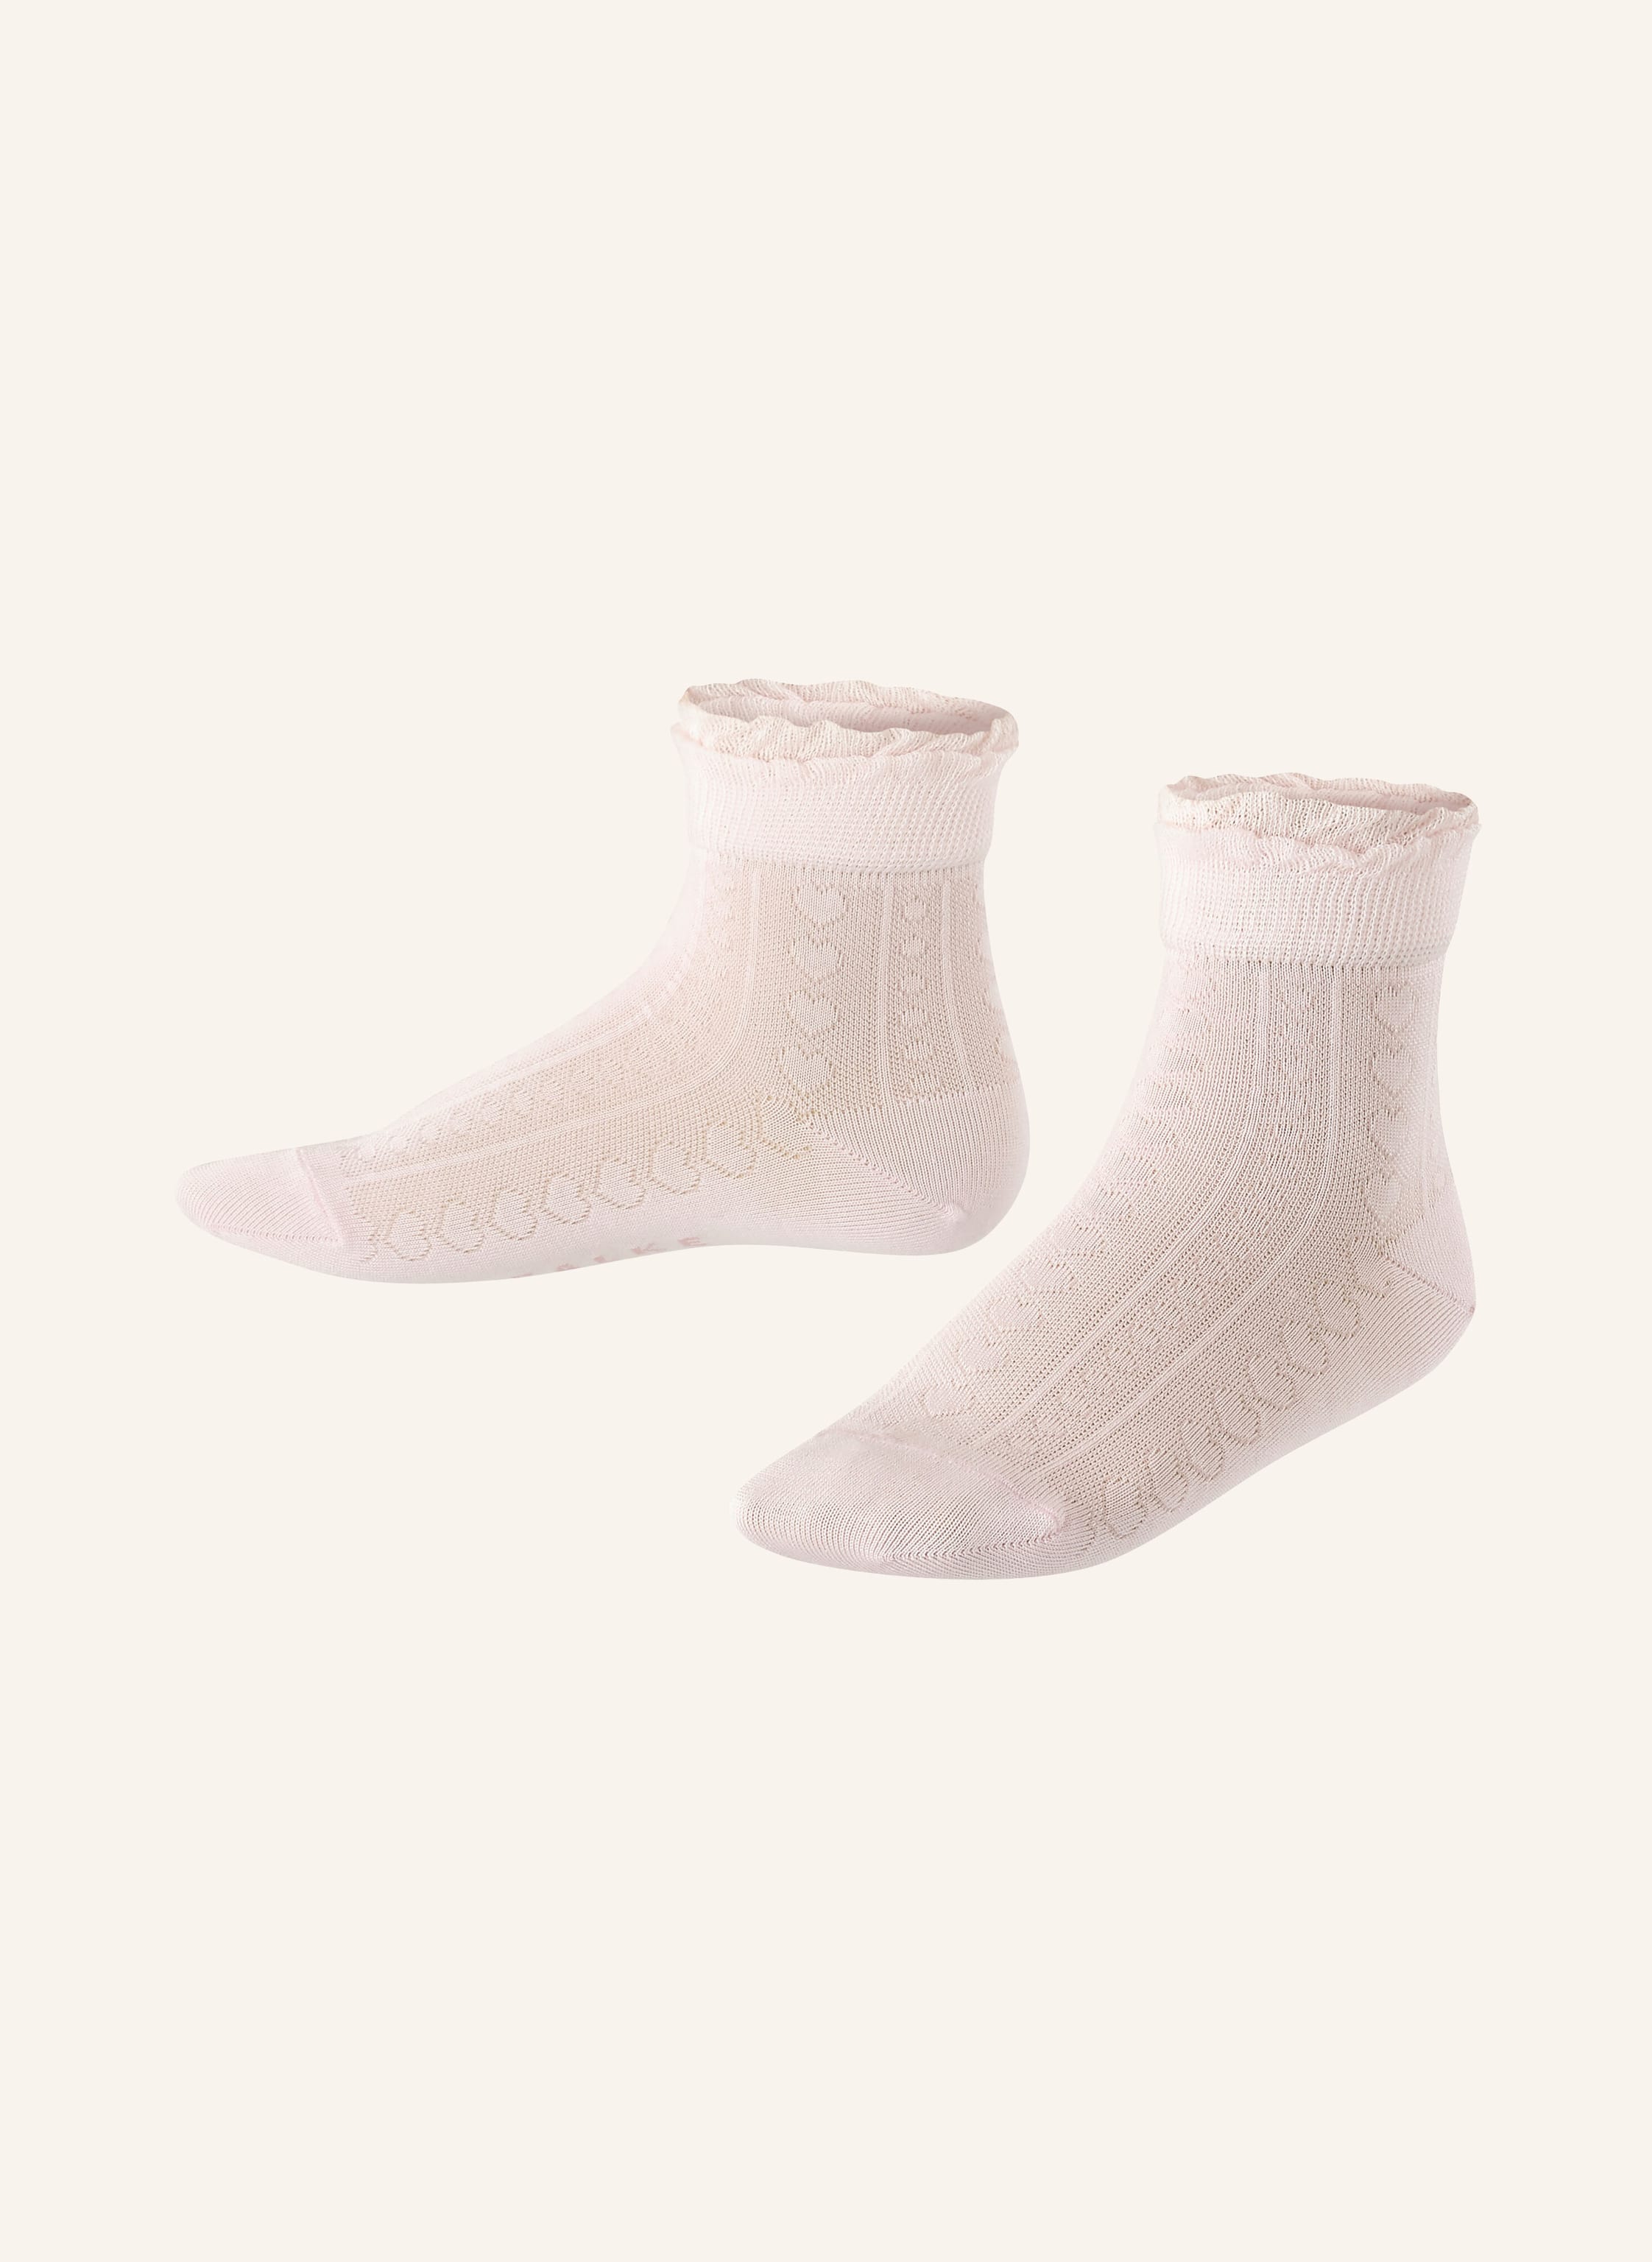 FALKE BABY SENSITIVE SOFT TOP - Socks - off white/off-white